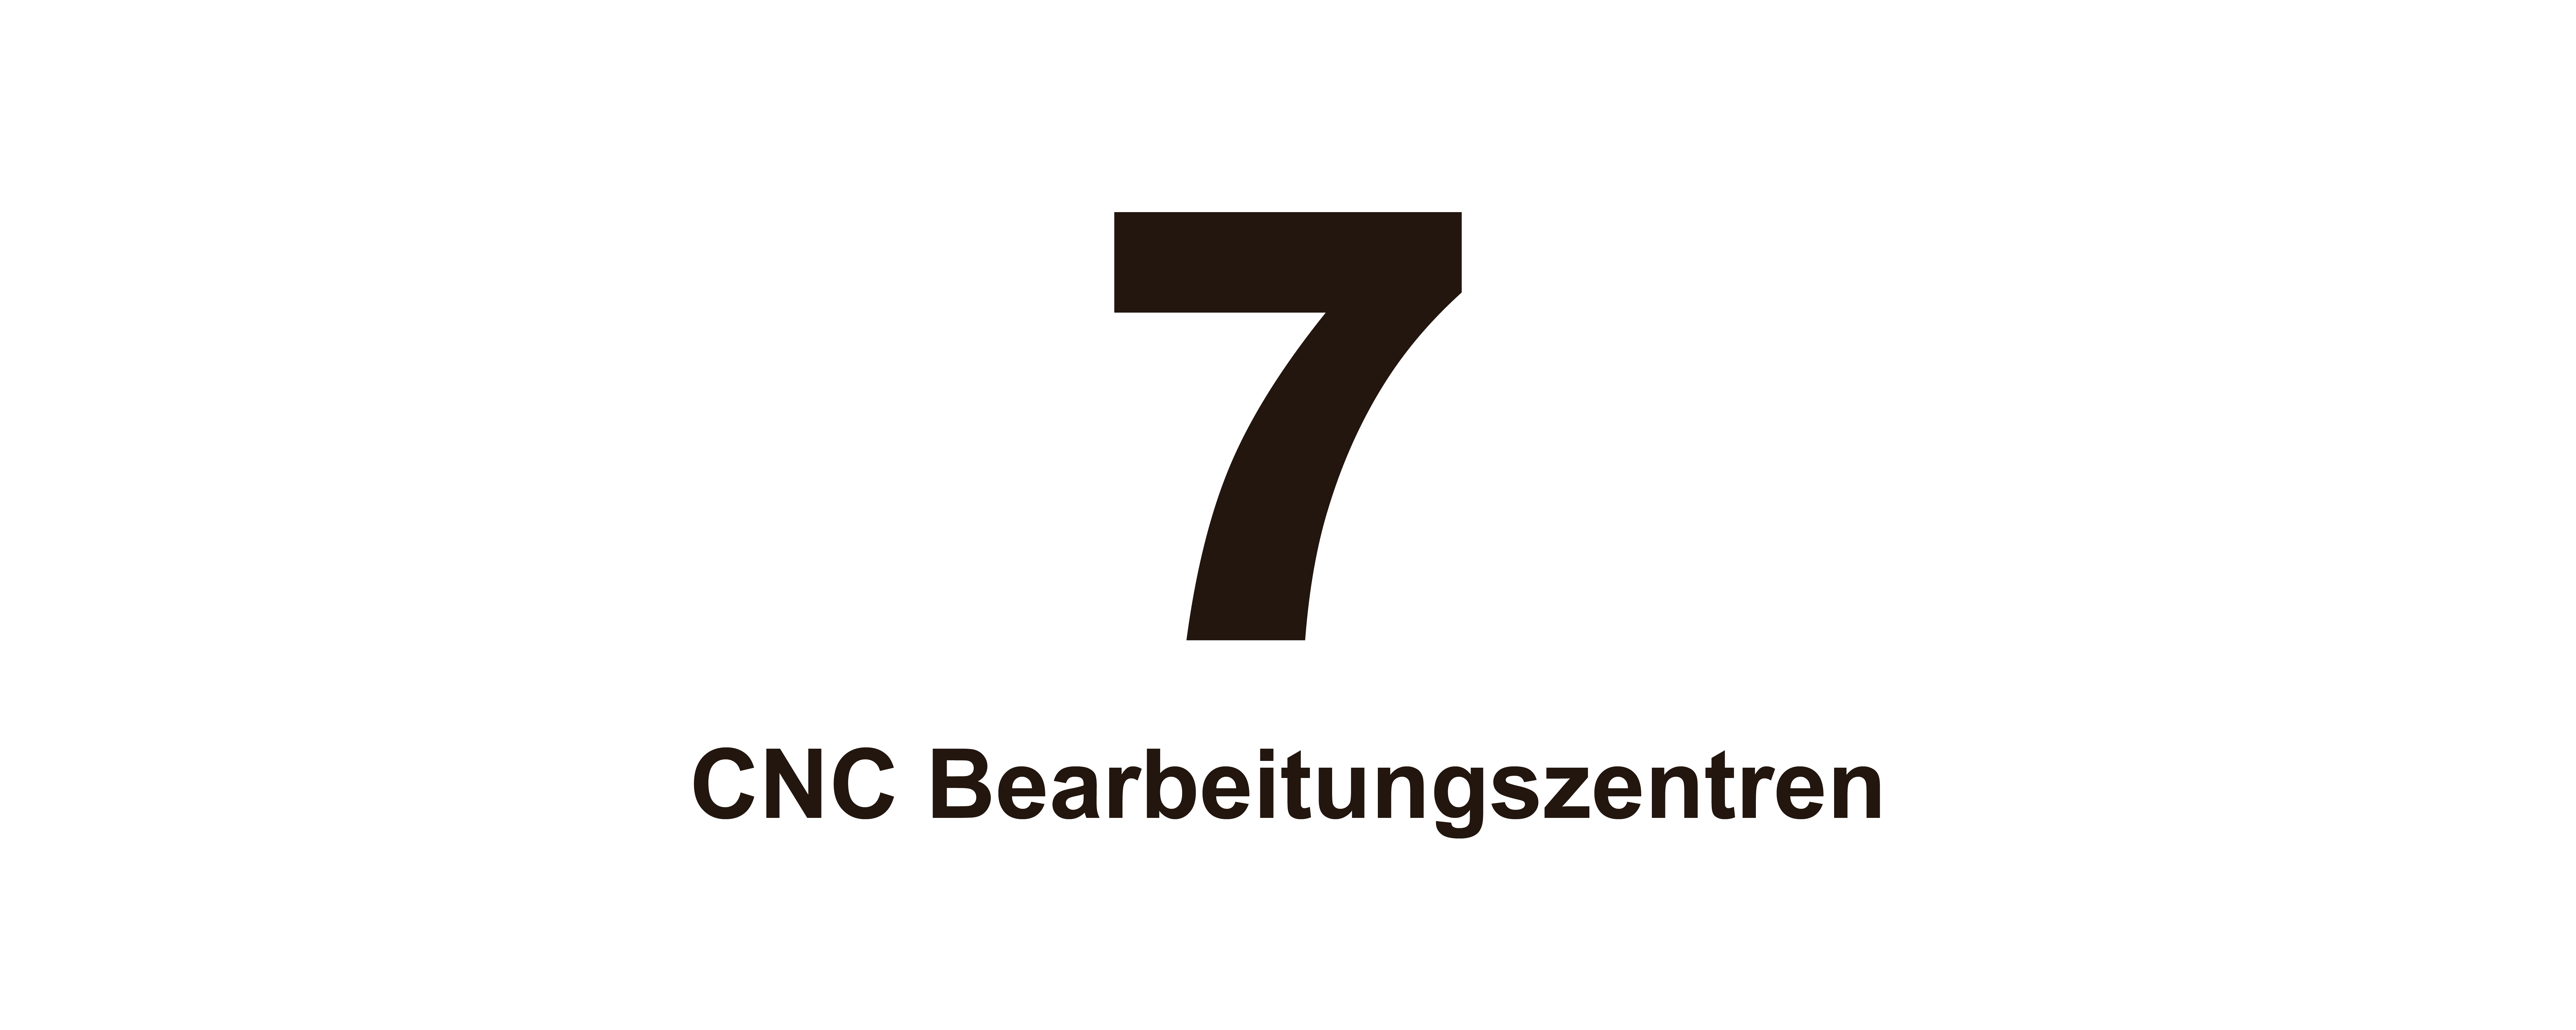 7 CNC-Bearbeitungszentren